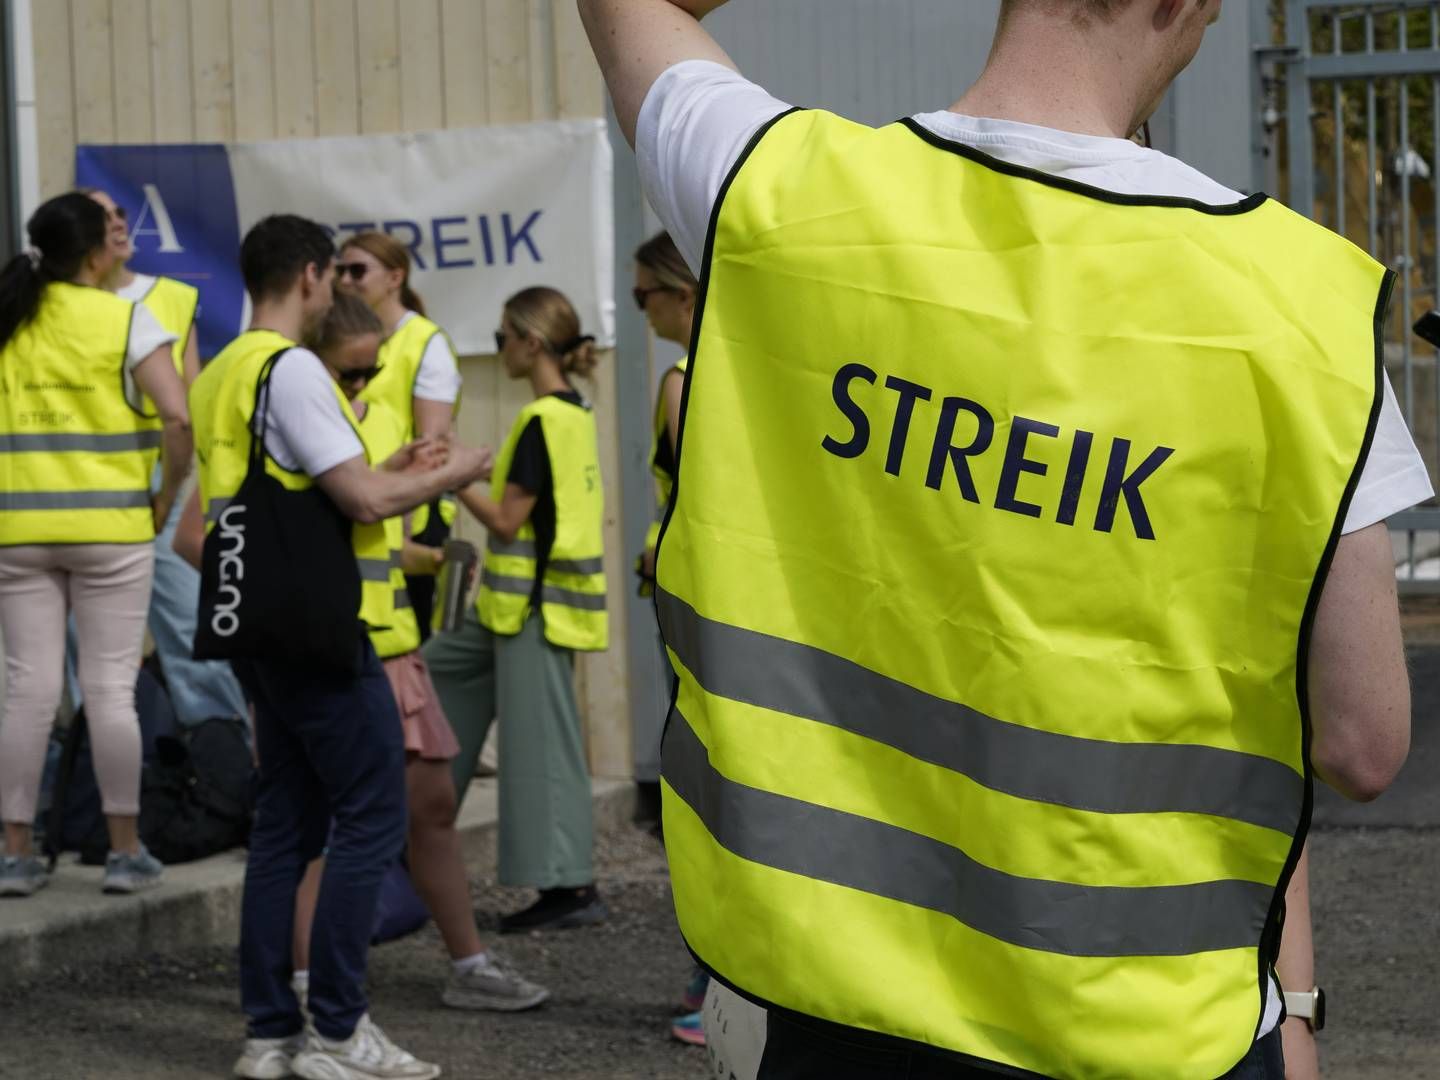 Vi forsøker å informere berørte interessenter om konsekvenser av streiken, skriver Mattilsynet i pressemeldingen sin. | Foto: Gorm Kallestad/NTB